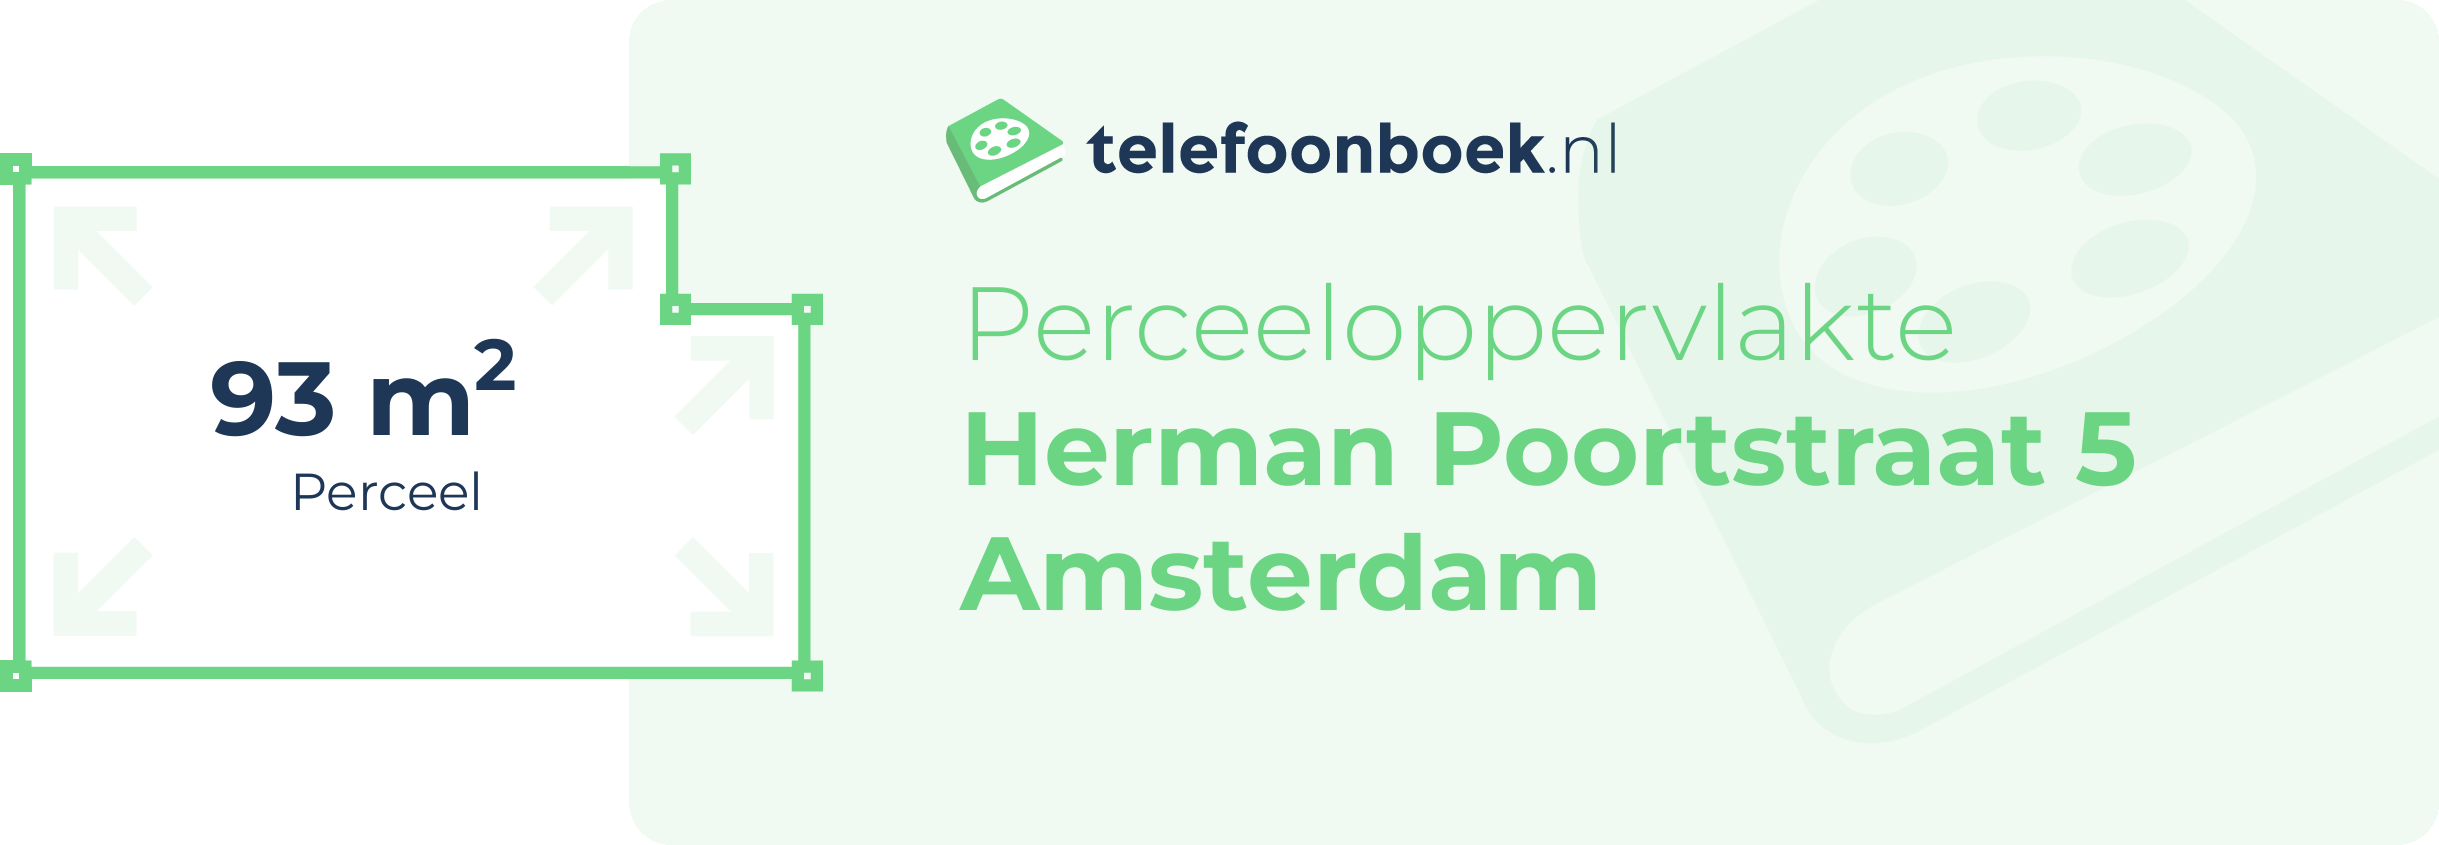 Perceeloppervlakte Herman Poortstraat 5 Amsterdam